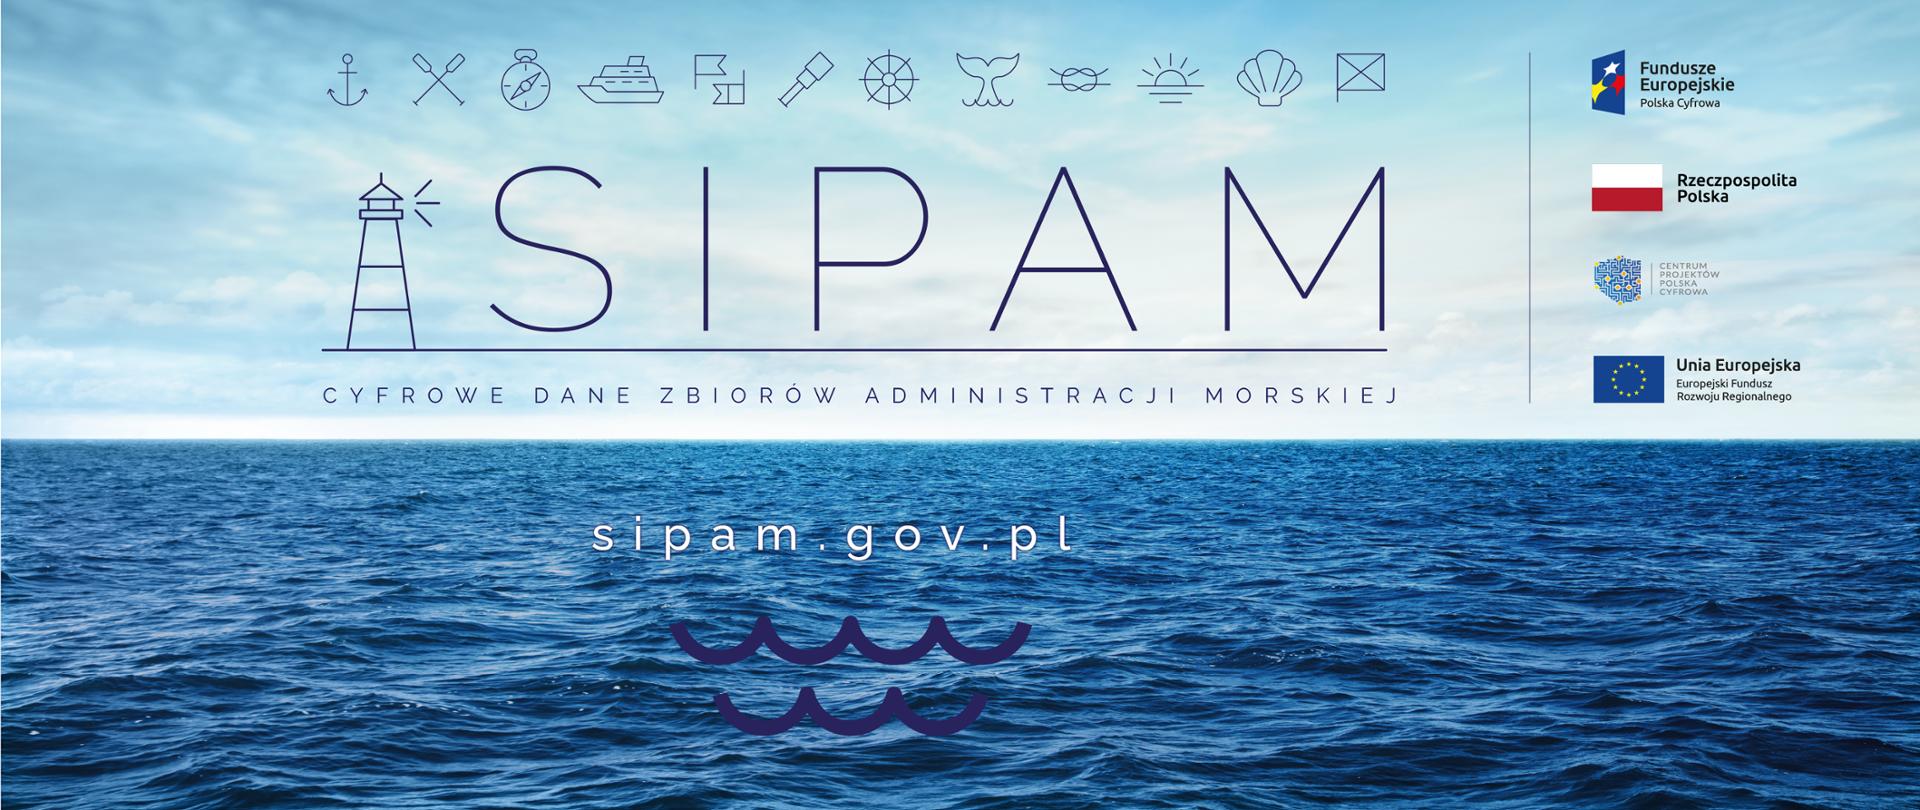 SIPAM - Cyfrowe dane zbiorów administracji morskiej